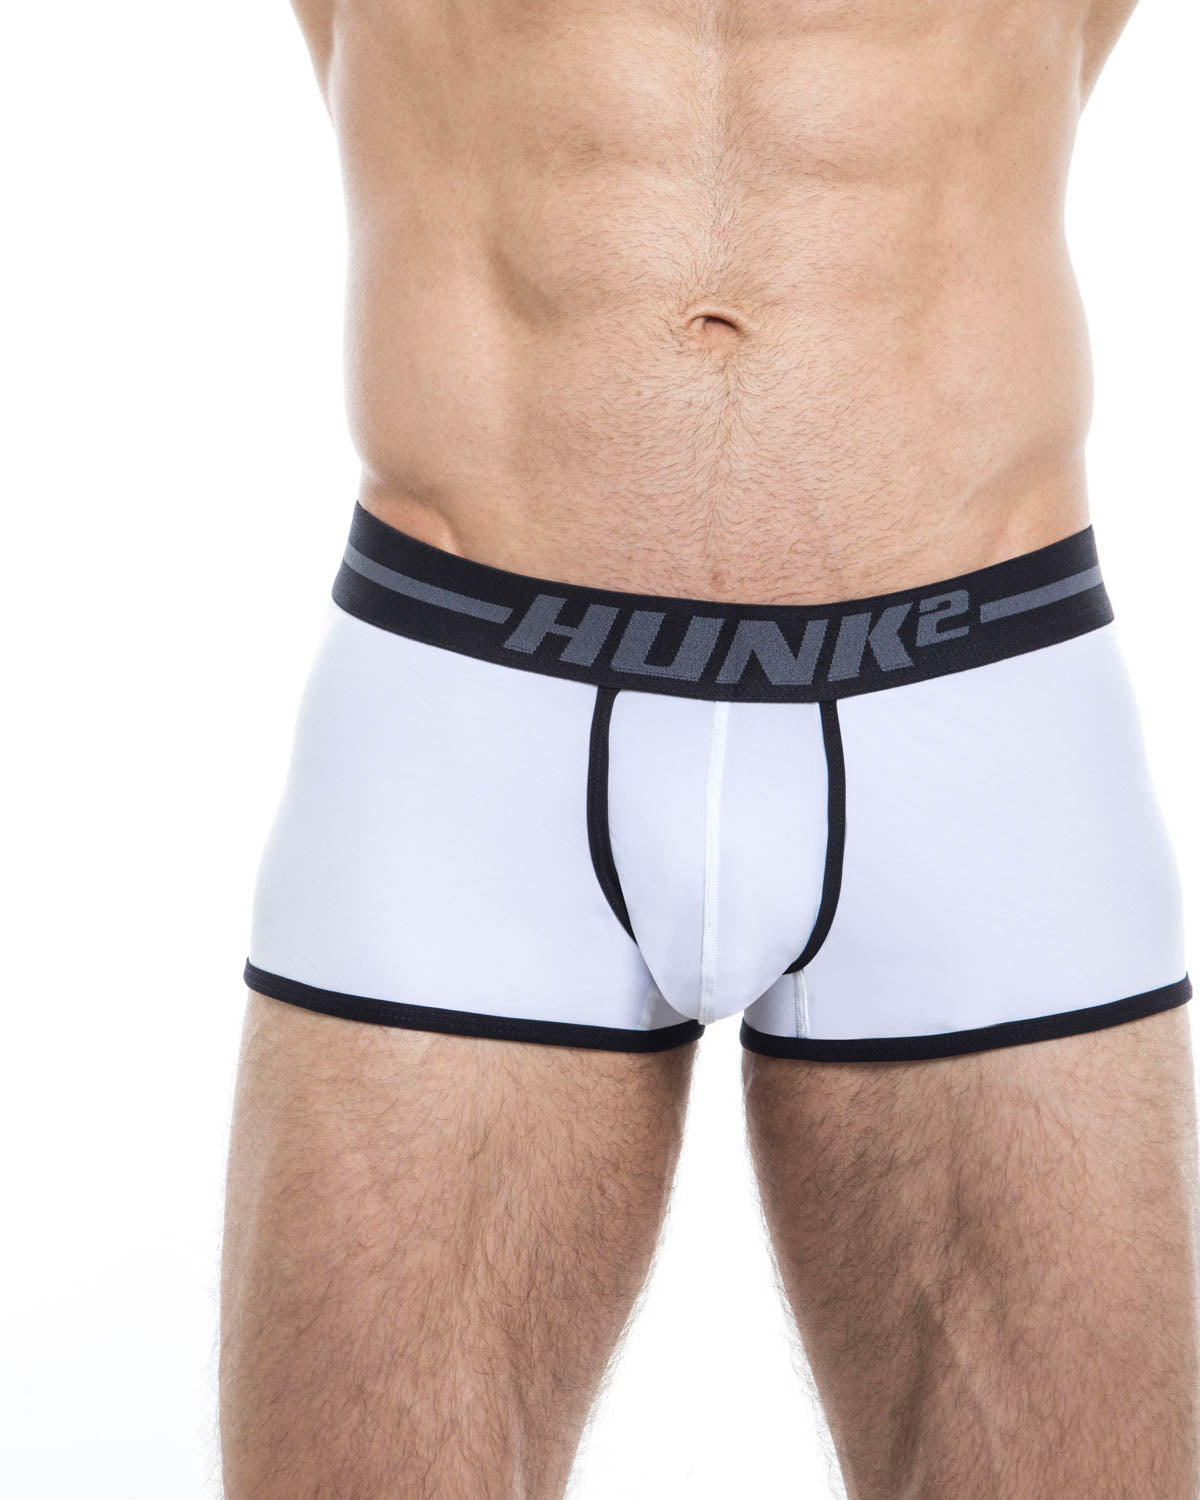 Men's trunk underwear - HUNK2 Underwear Alphae Licht Trunks available at MensUnderwear.io - Image 1